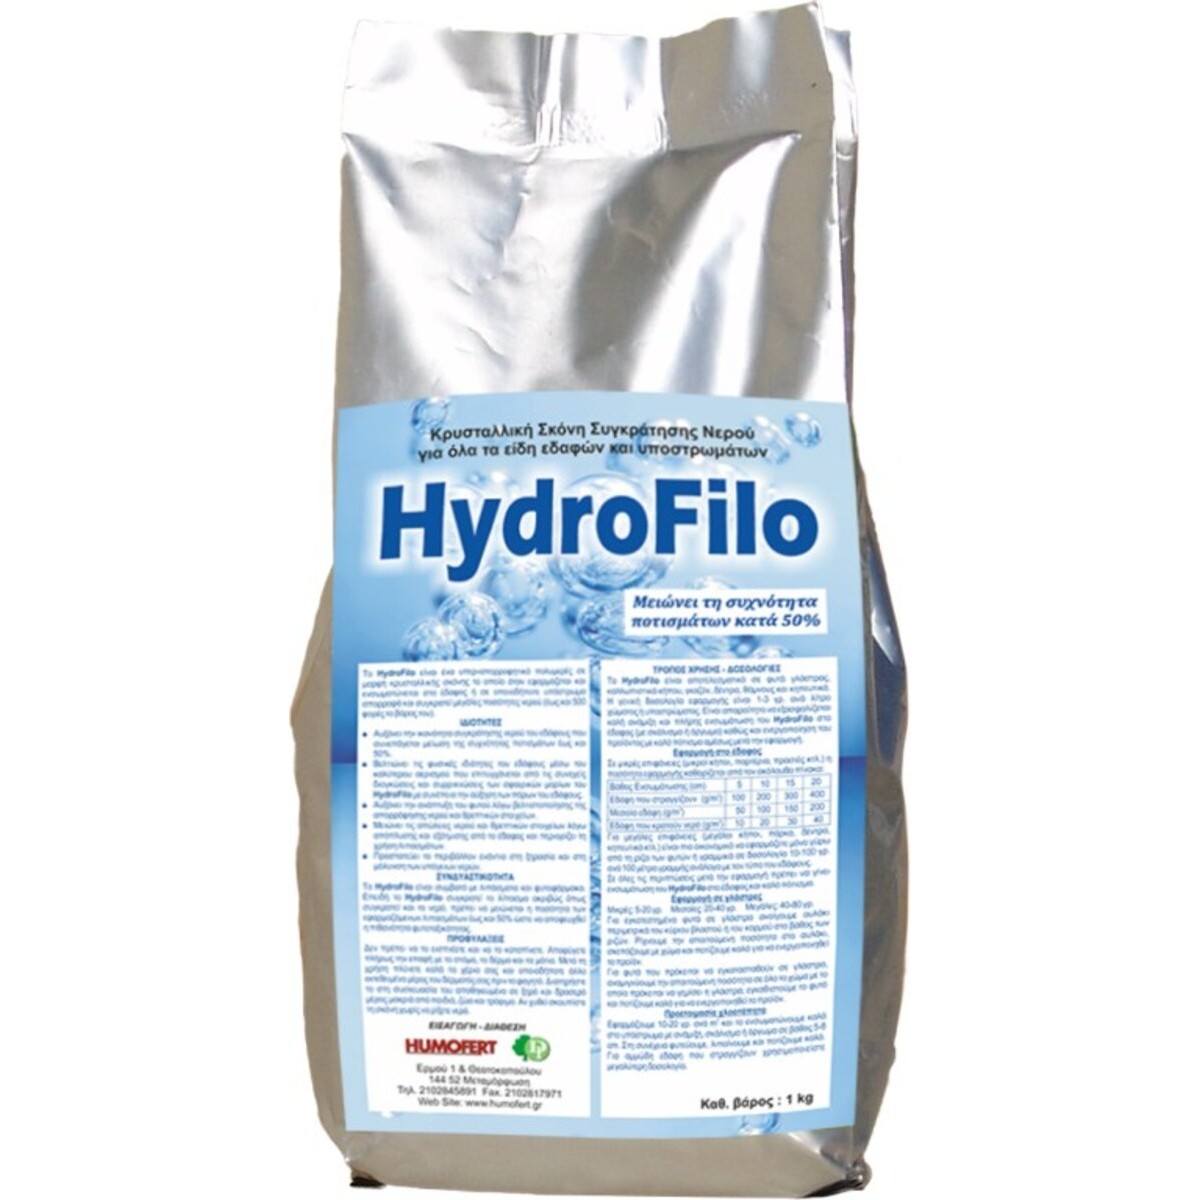 HYDROFILO Κρυσταλλική σκόνη συγκράτησης νερού-MaShop.gr